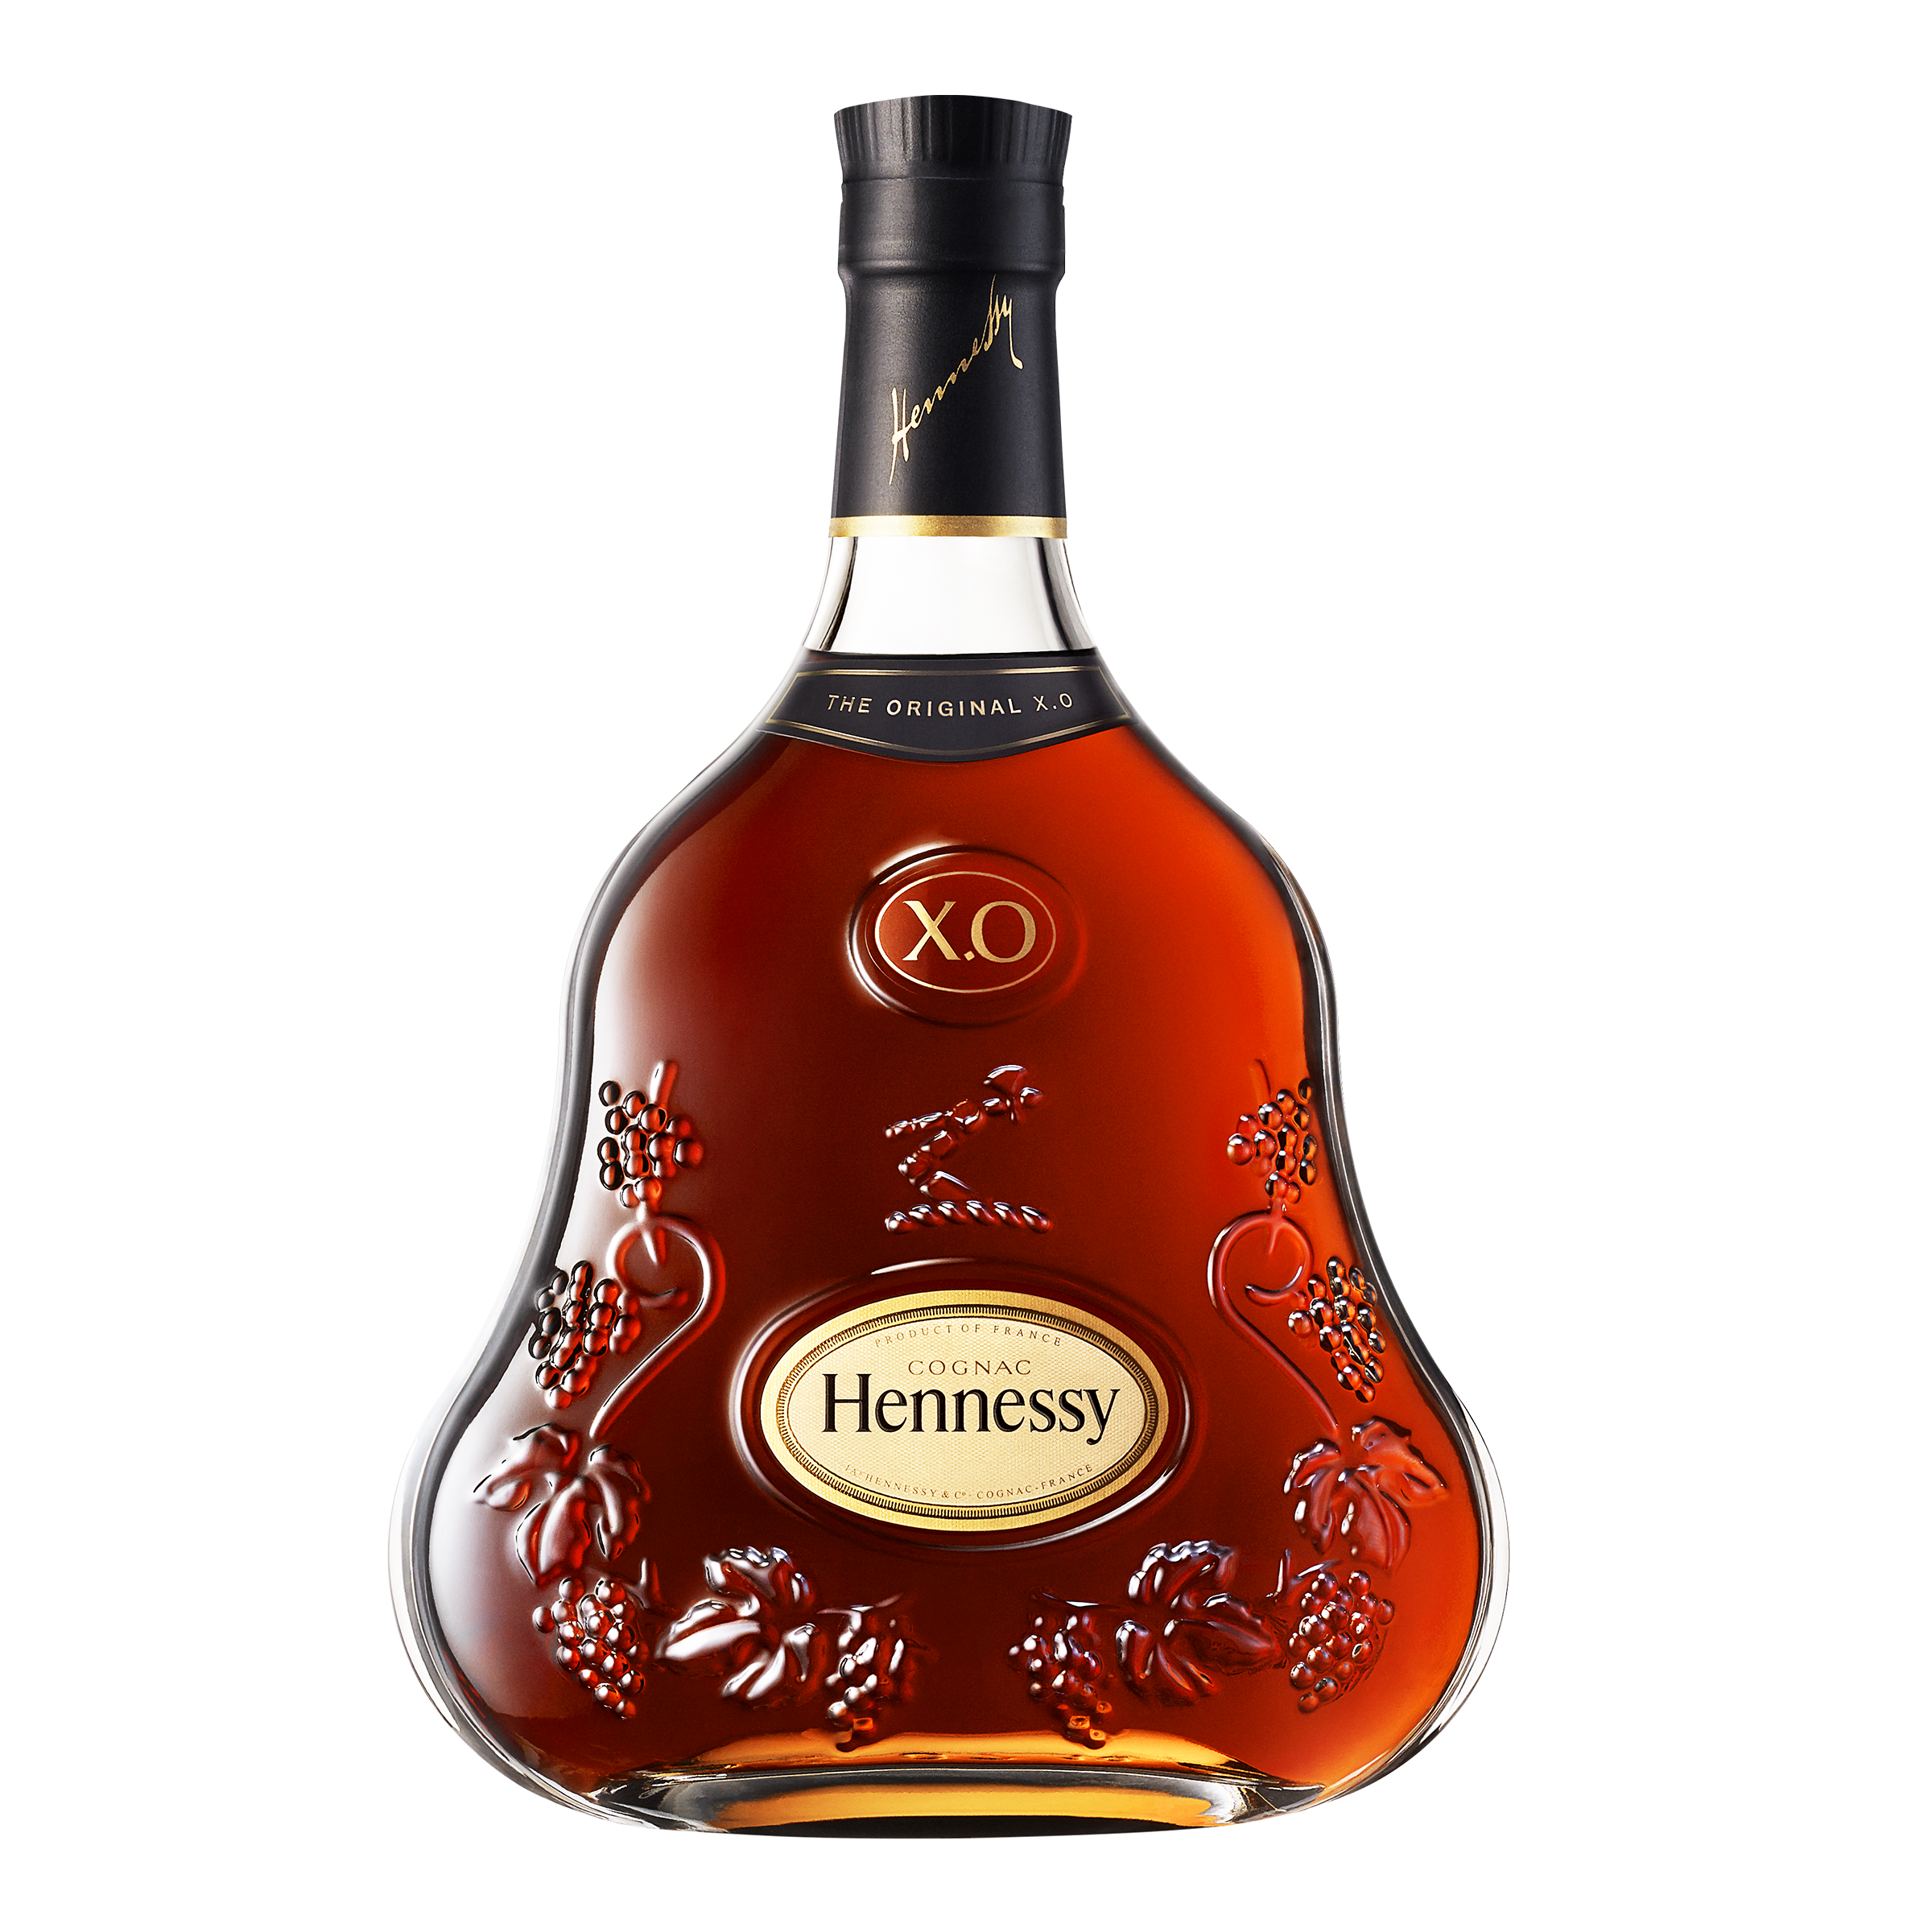 Коньяк Hennessy XO 20 років витримки, в подарунковій упаковці, 40%, 0,7 л (1103) - фото 2